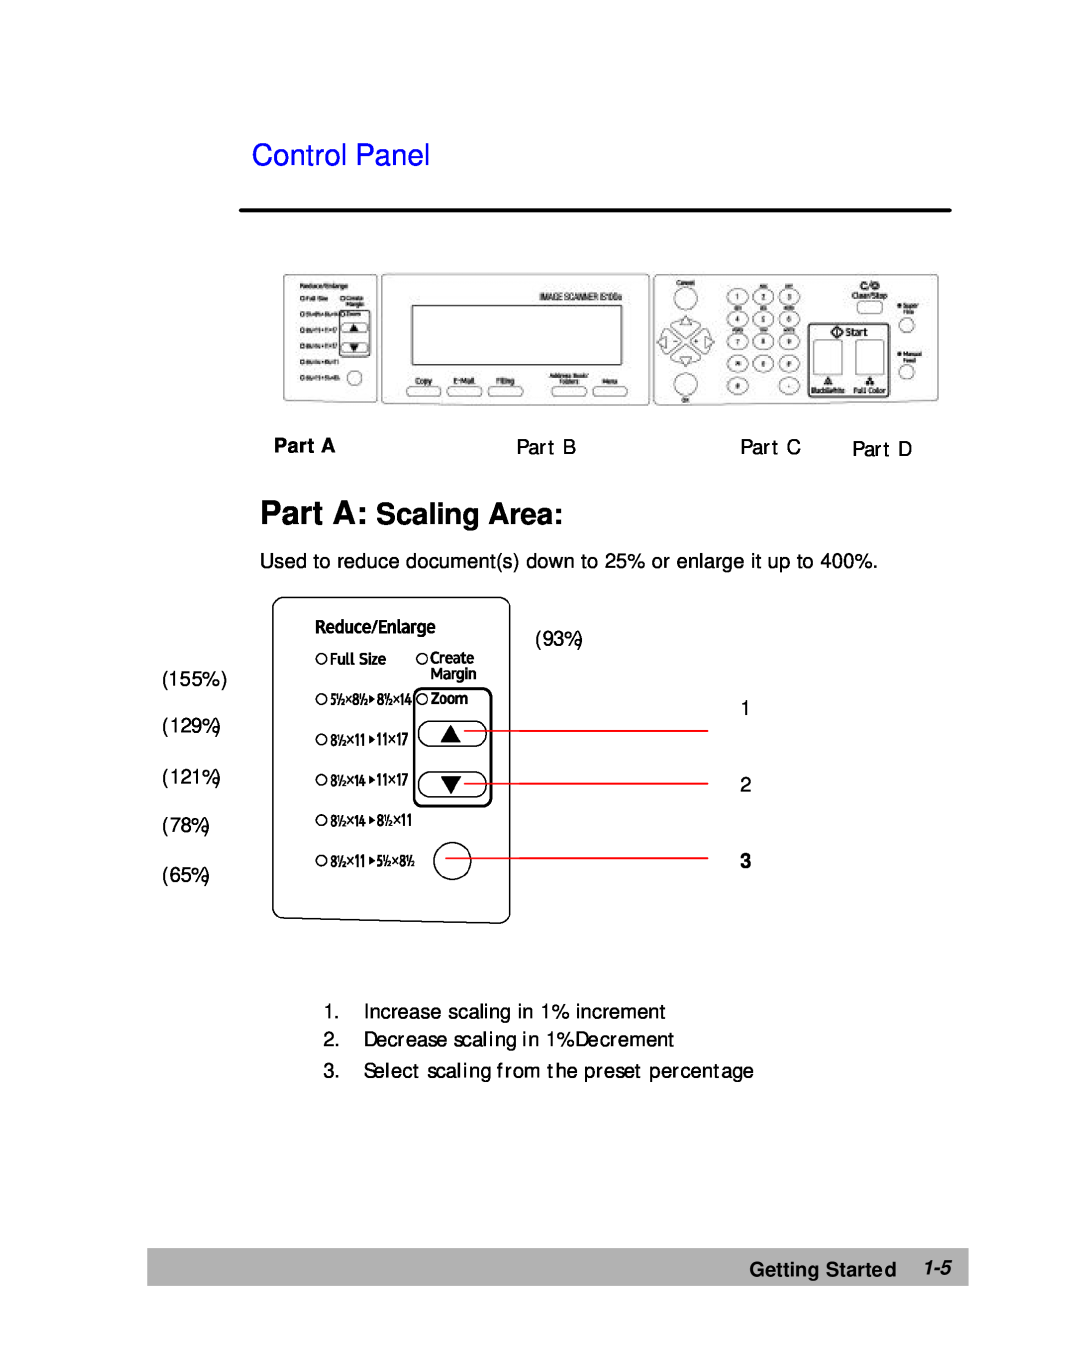 Lanier IS100e Control Panel, Part A Scaling Area, 129% 121% 78% 65%, Decrease scaling in 1% Decrement, Part B, Part C 